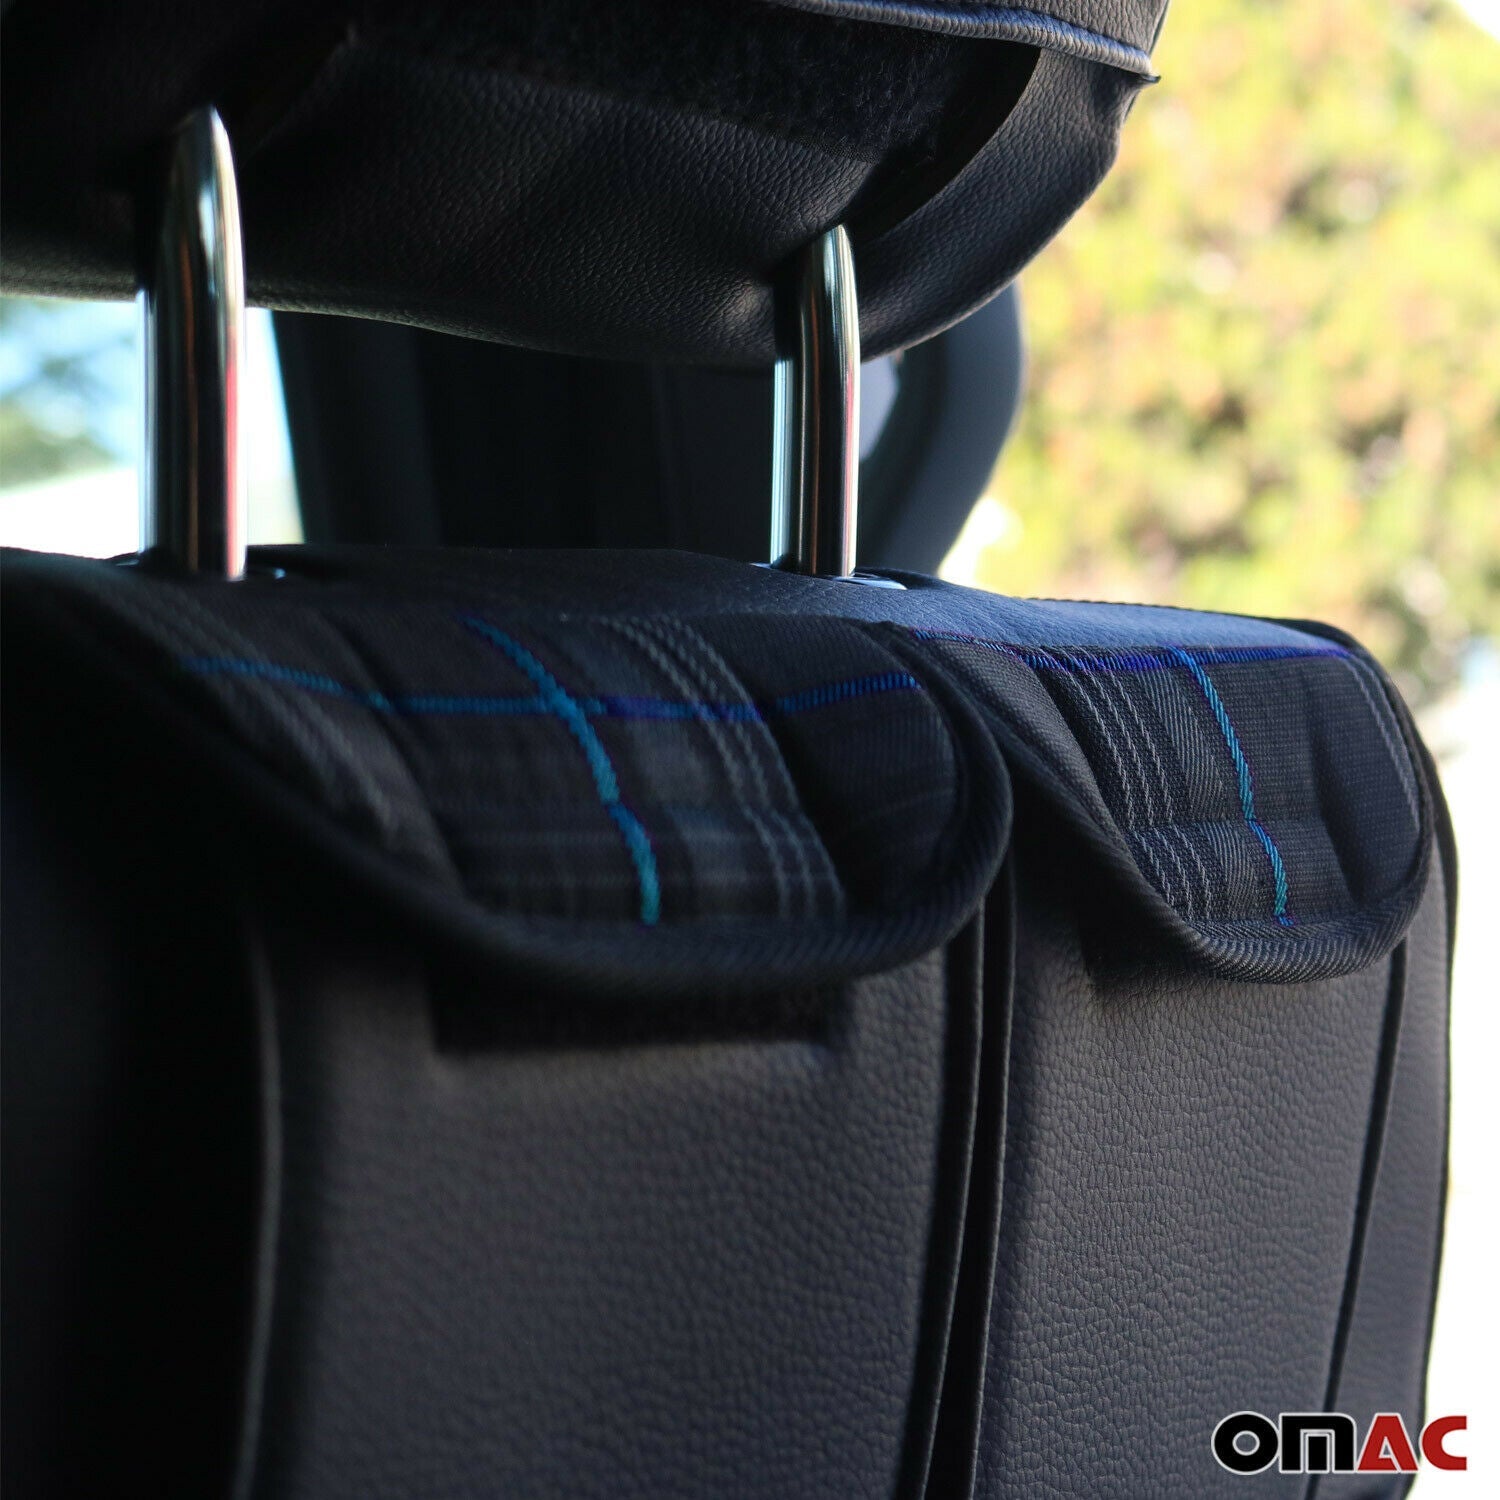 Rücksitztasche Sitz Organizer Beifahrersitz 3 Fächer passend für VW T5